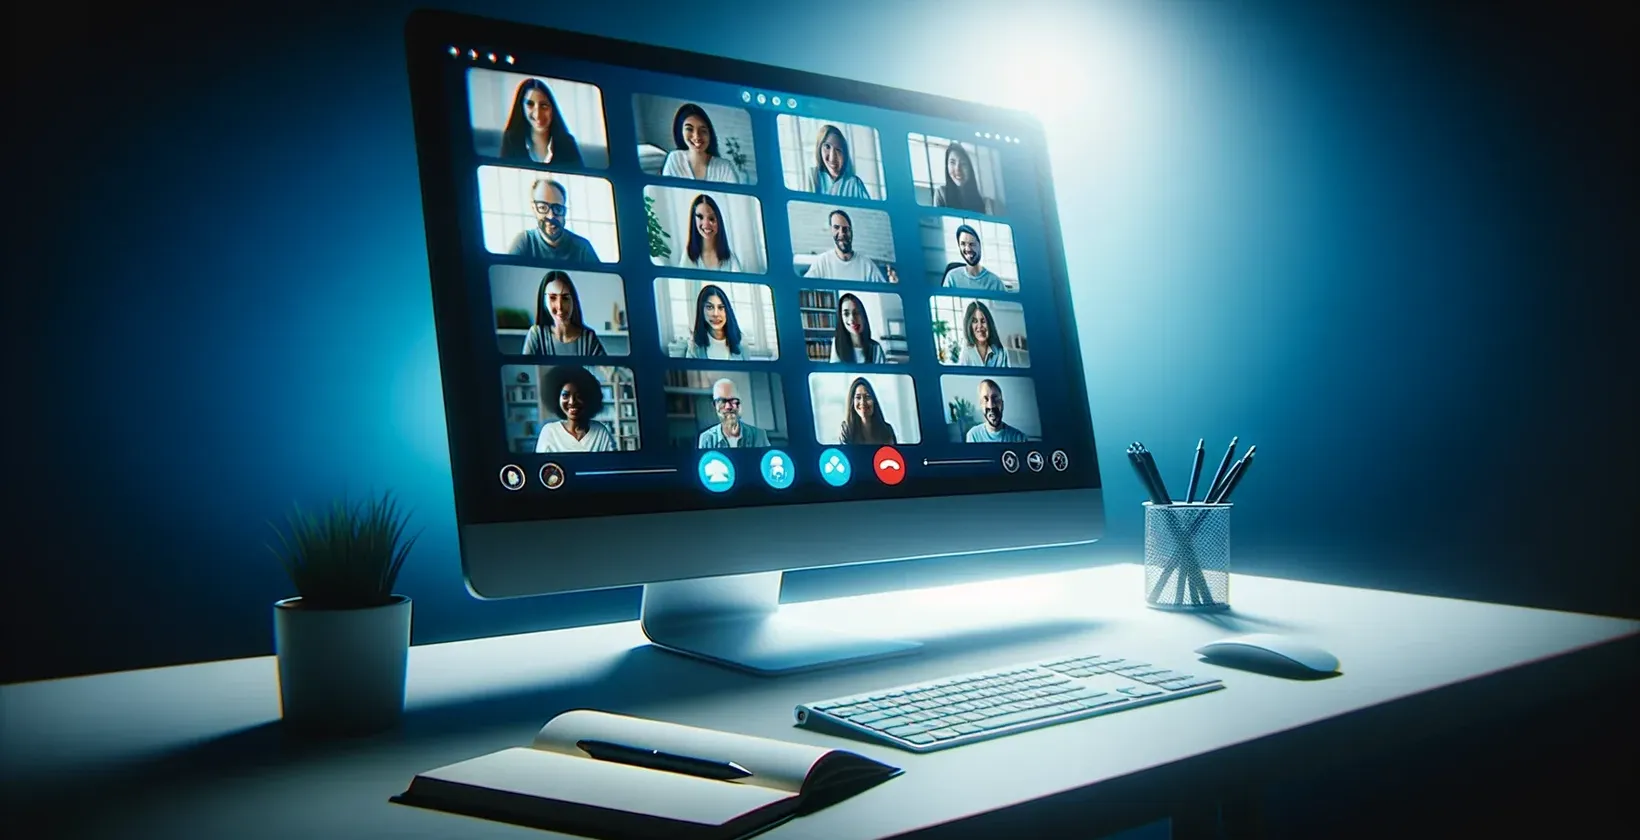 Slika ekrana računara koji prikazuje GoToMeeting sesiju, sa grupom ljudi i vidljivom transkripcijom uživo.